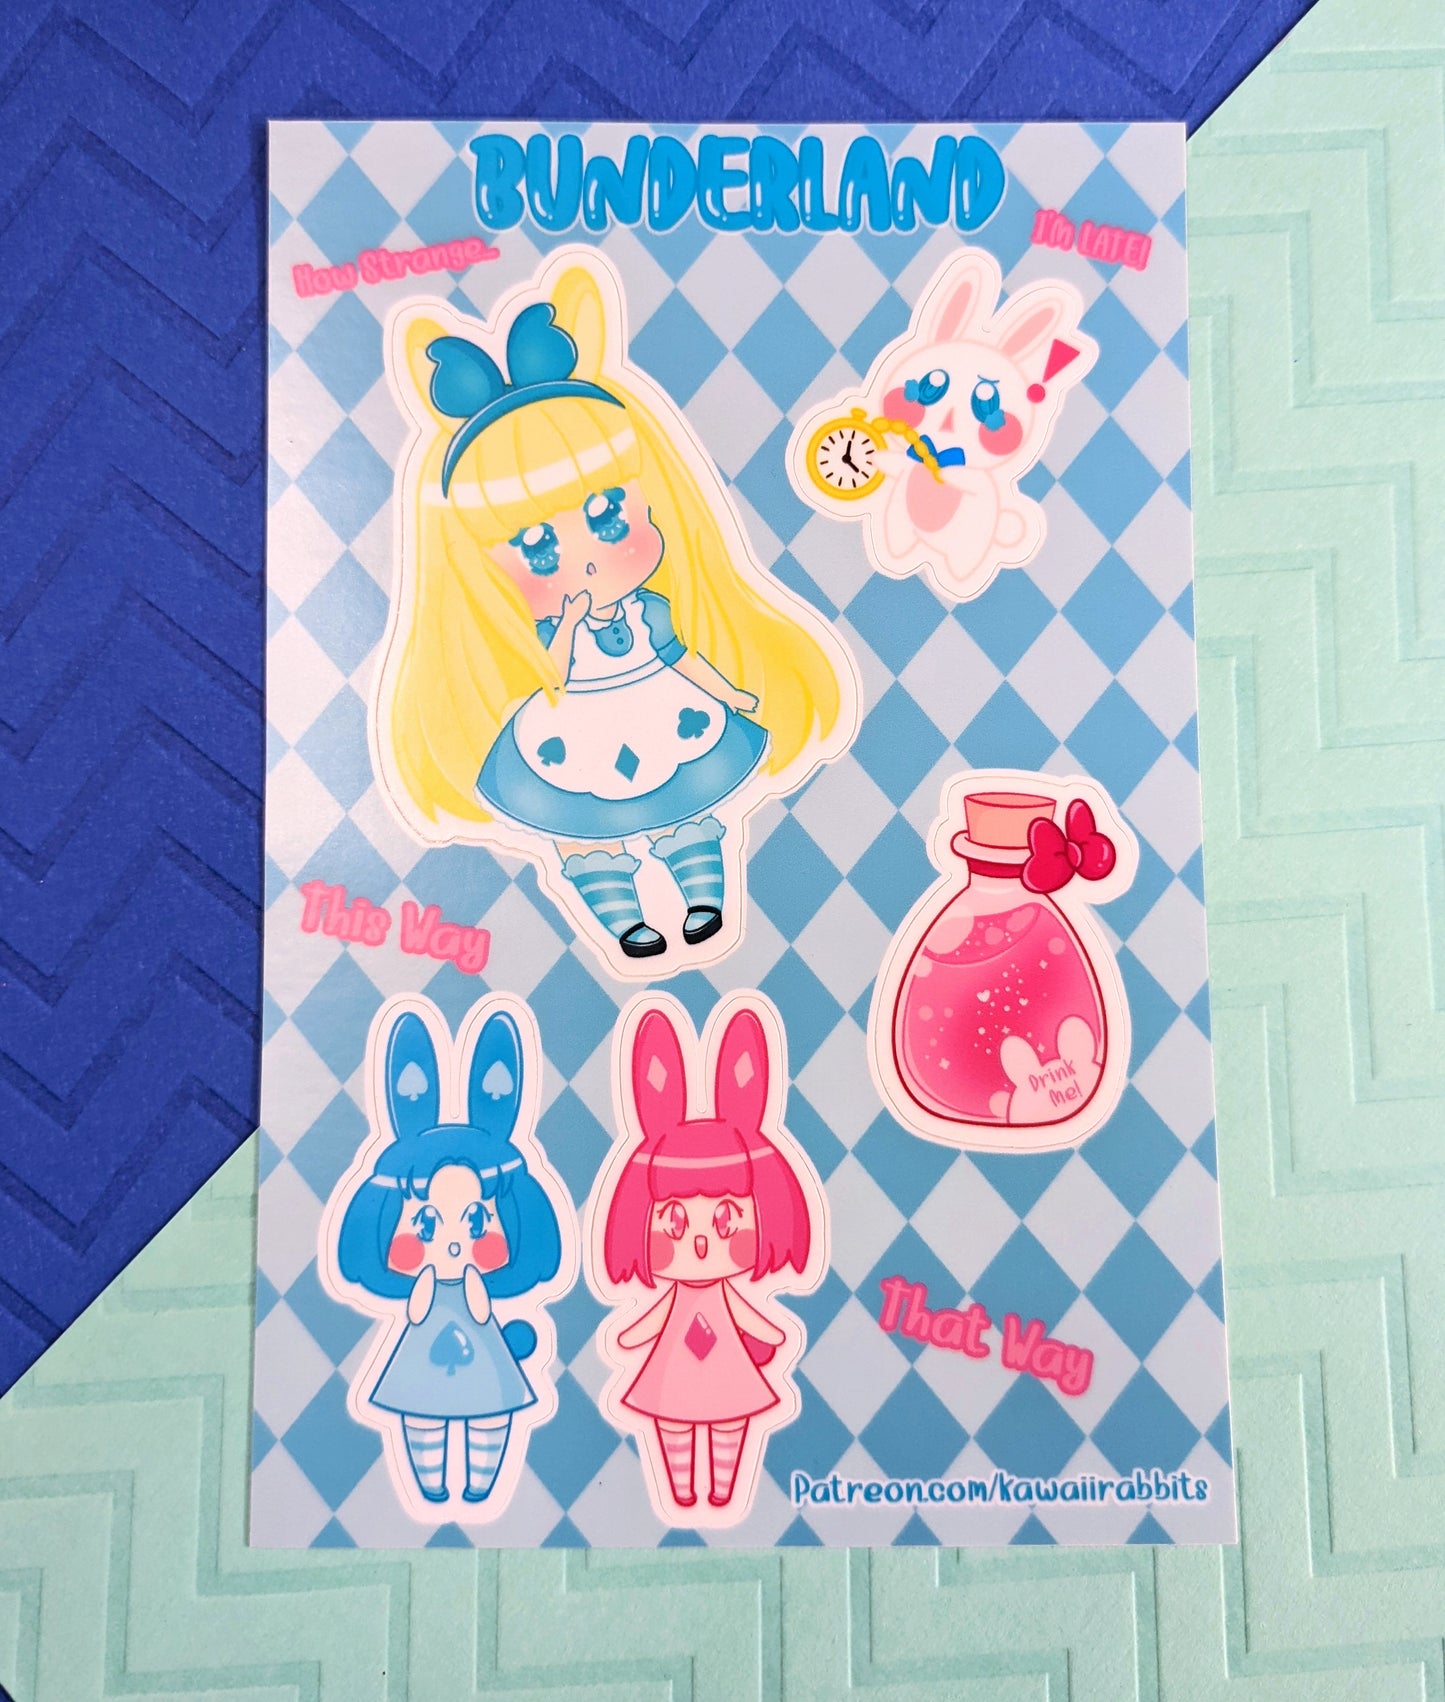 Bunderland Sticker Sheet